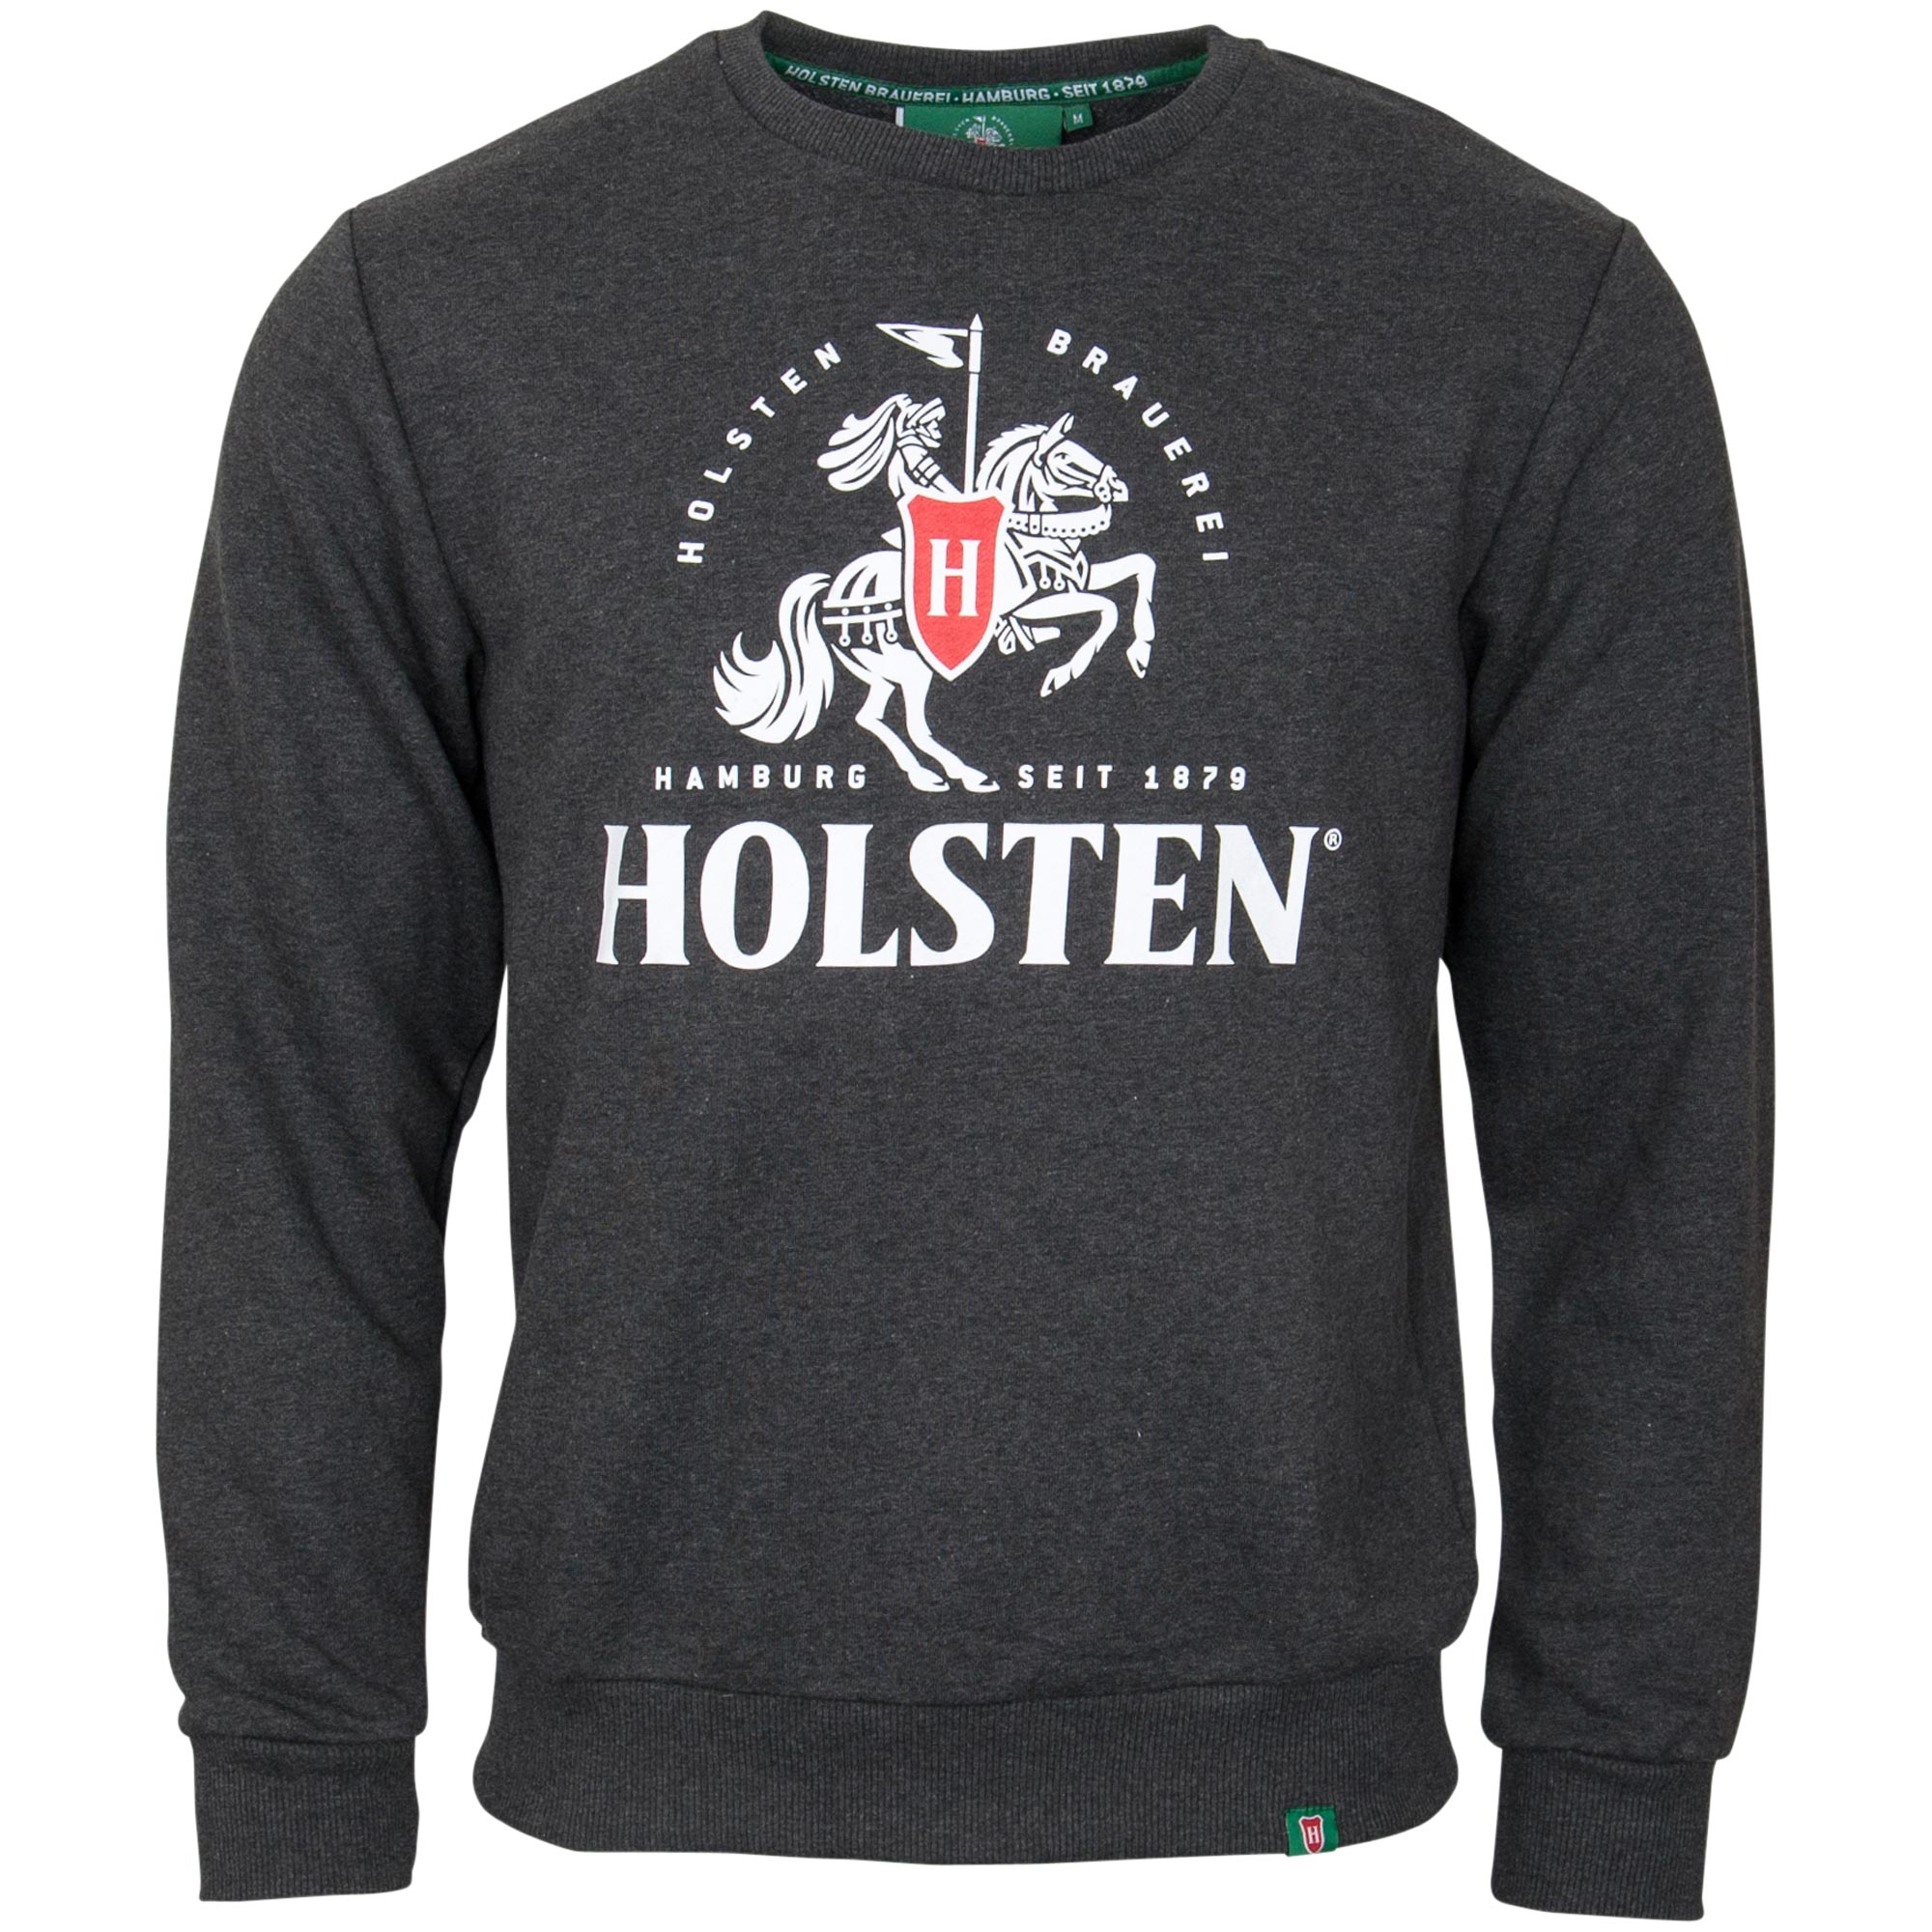 Holsten - Sweatshirt Ritter gross - anthrazit